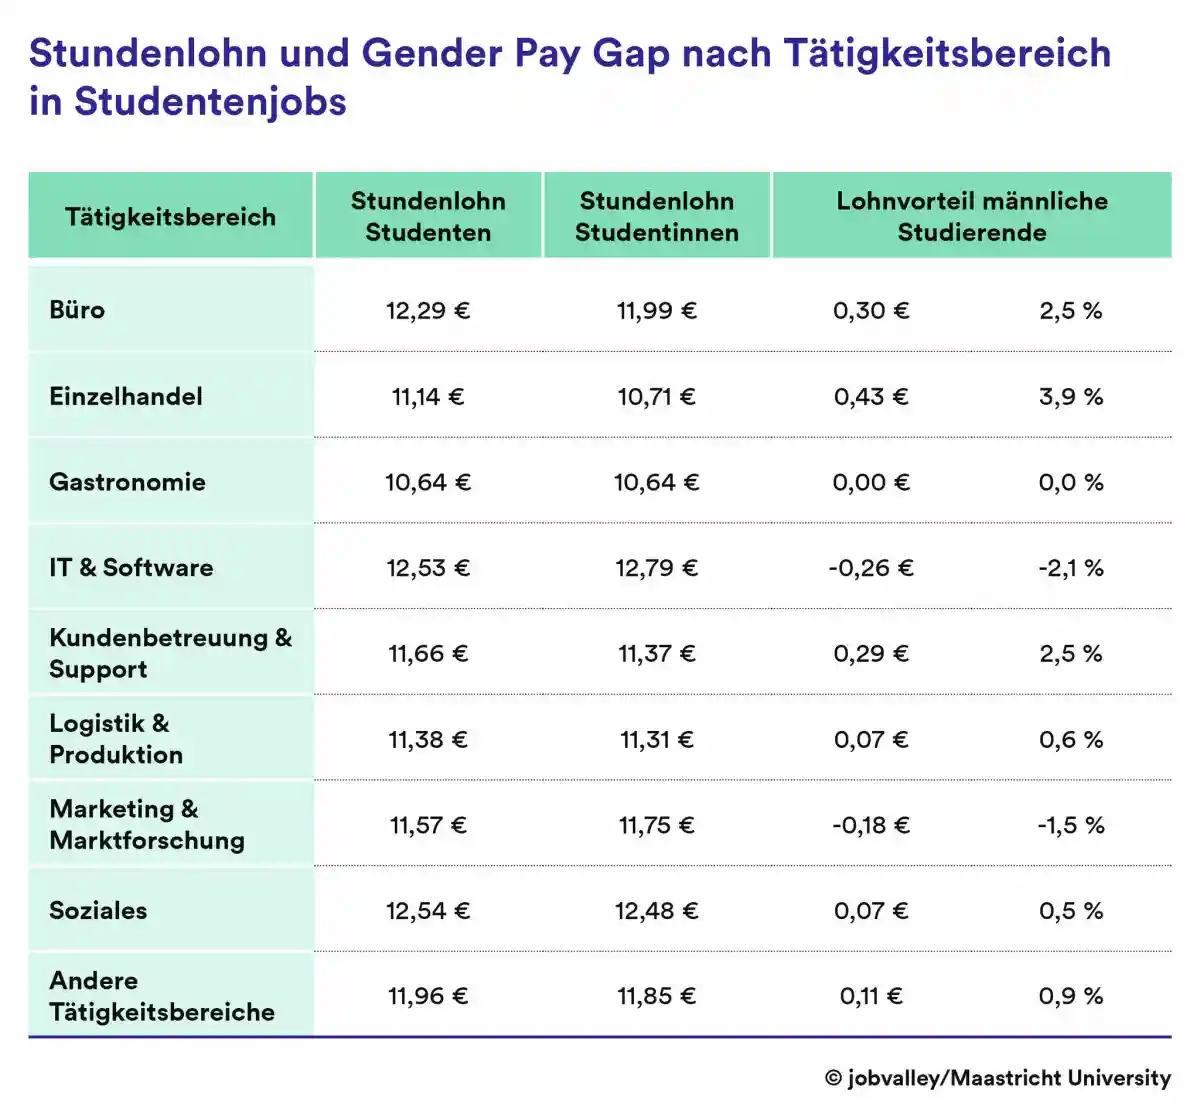 Студенческая заработная плата и разрыв в гендерной оплате труда в соответствии со сферой занятости. Фото: Jobvalley / Maastricht University